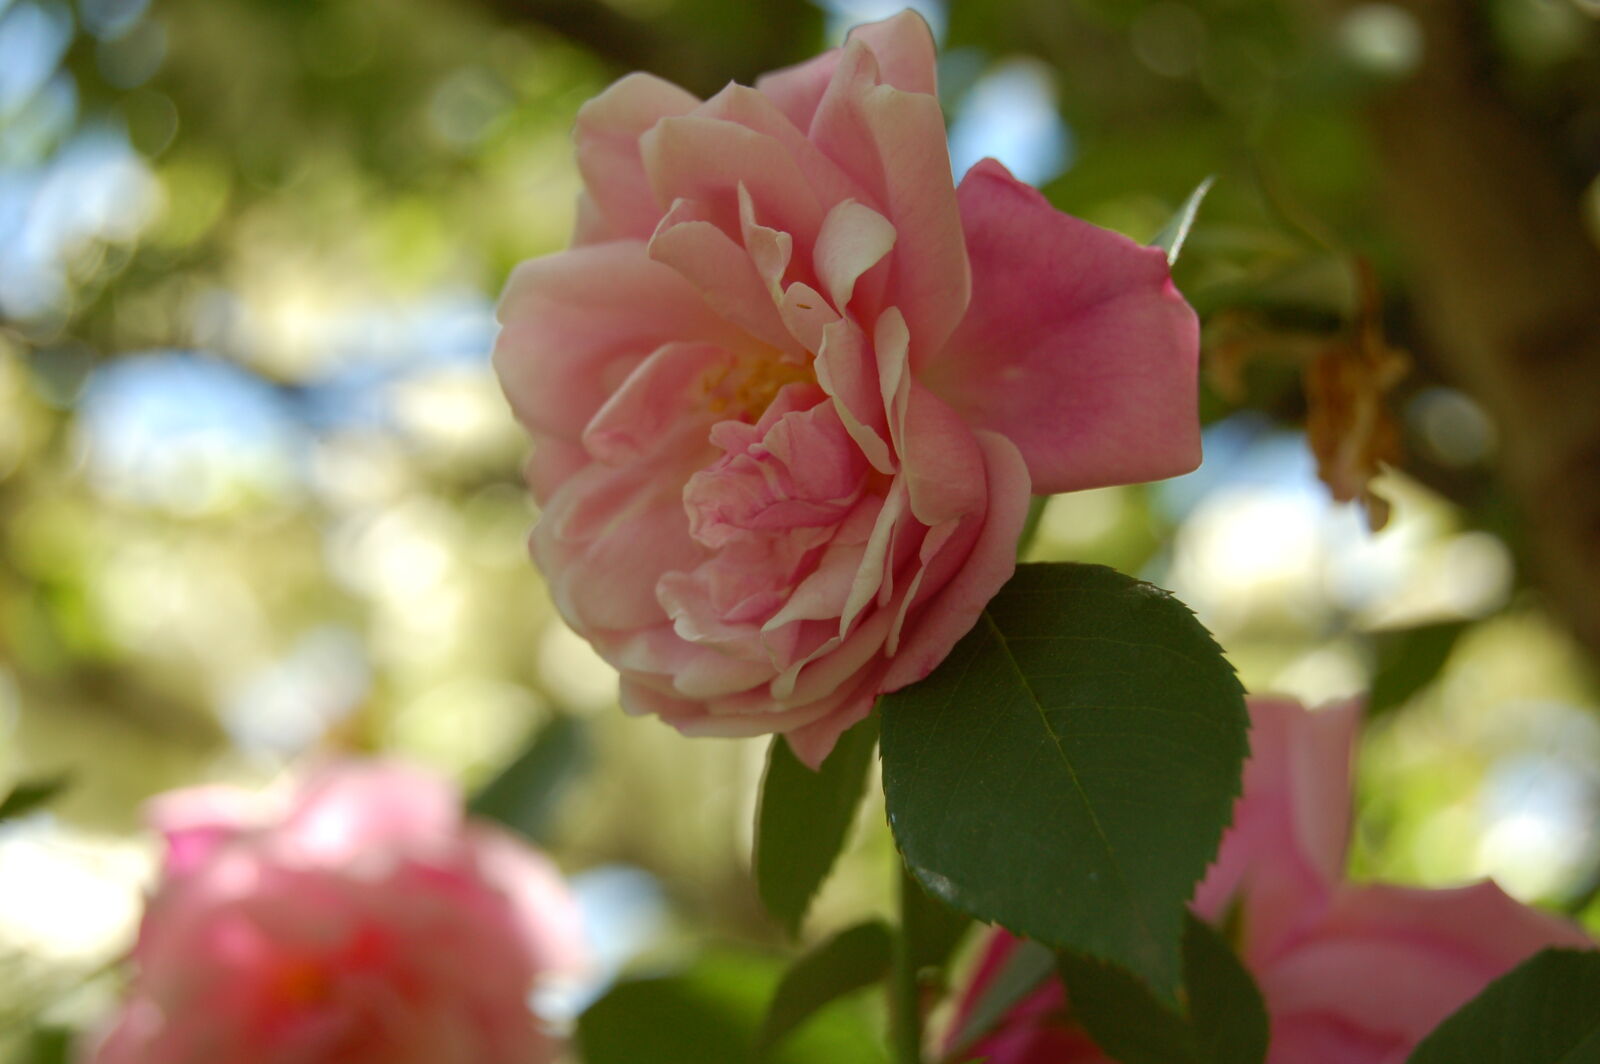 Nikon D50 + AF-S DX Zoom-Nikkor 18-55mm f/3.5-5.6G ED sample photo. Delicate, flower, flowers, garden photography